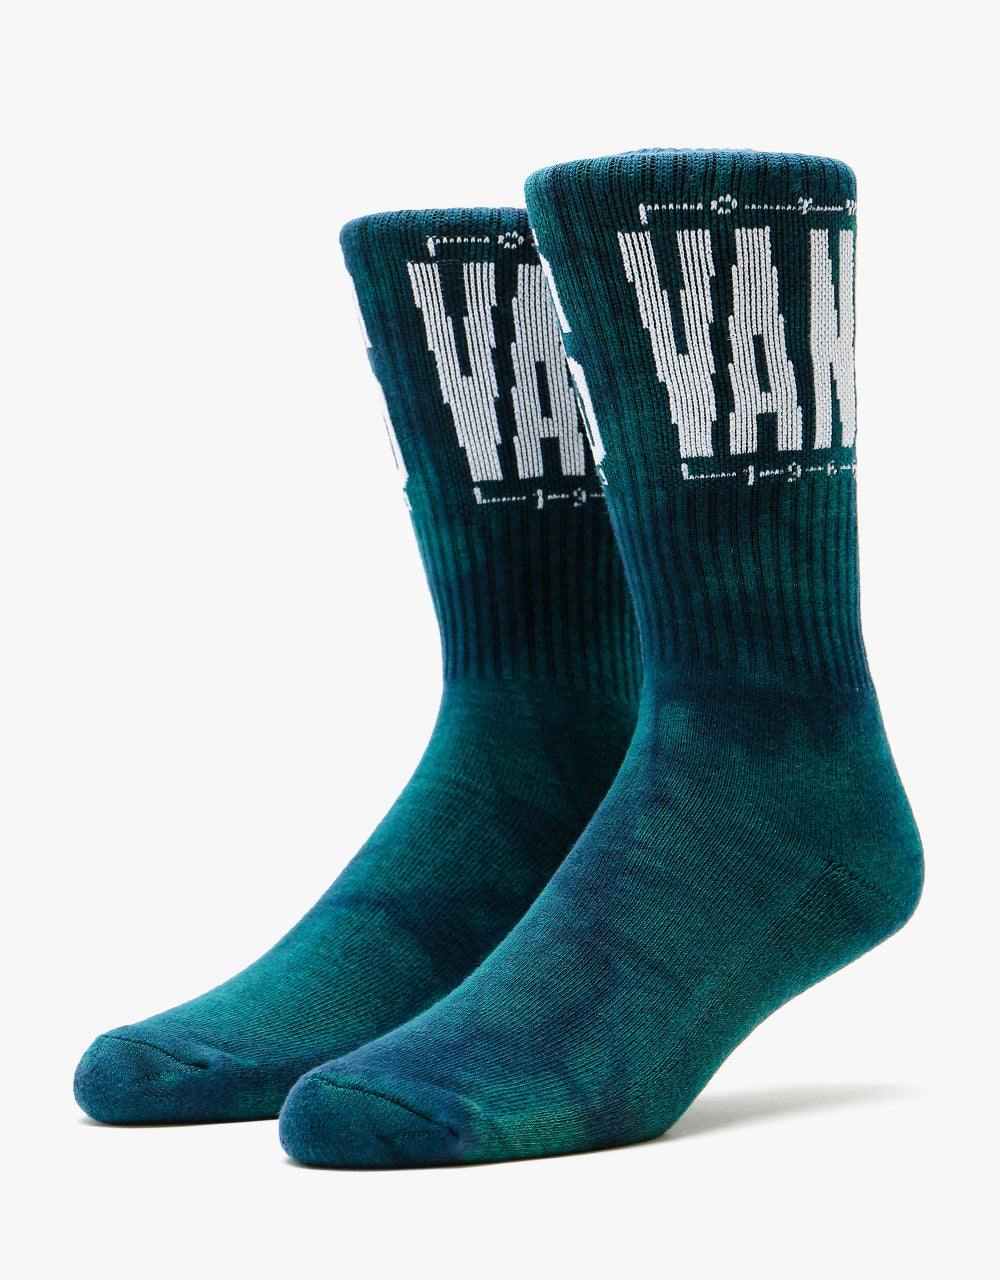 Vans Easton Tie Dye Crew Socks - Blue Coral/Tie Dye